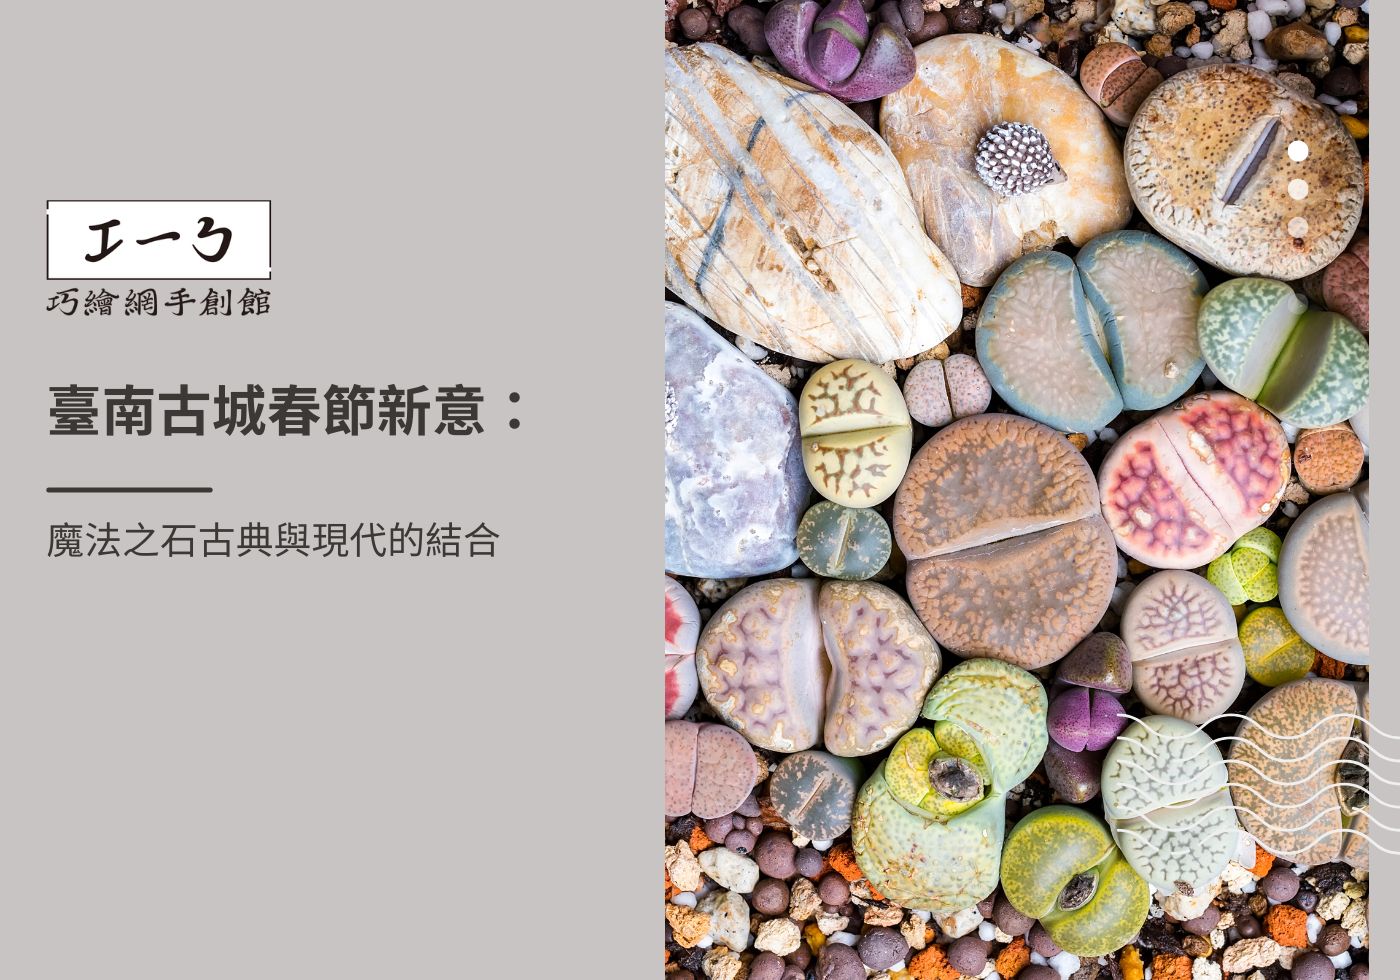 閱讀更多文章 臺南古城春節新意：魔法之石古典與現代的結合